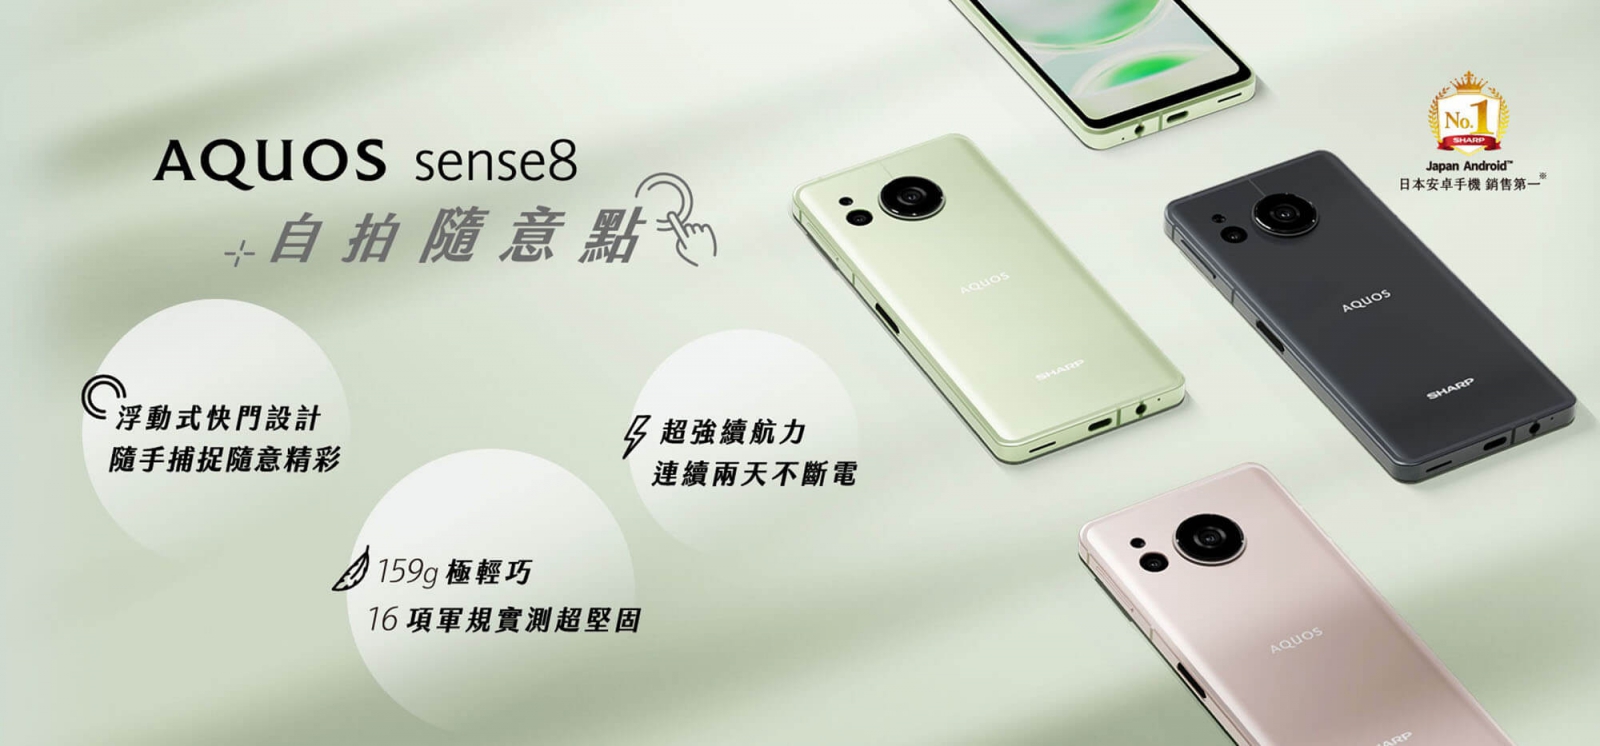 日本國產市占第一的手機品牌SHARP，AQUOS sense8輕巧上市